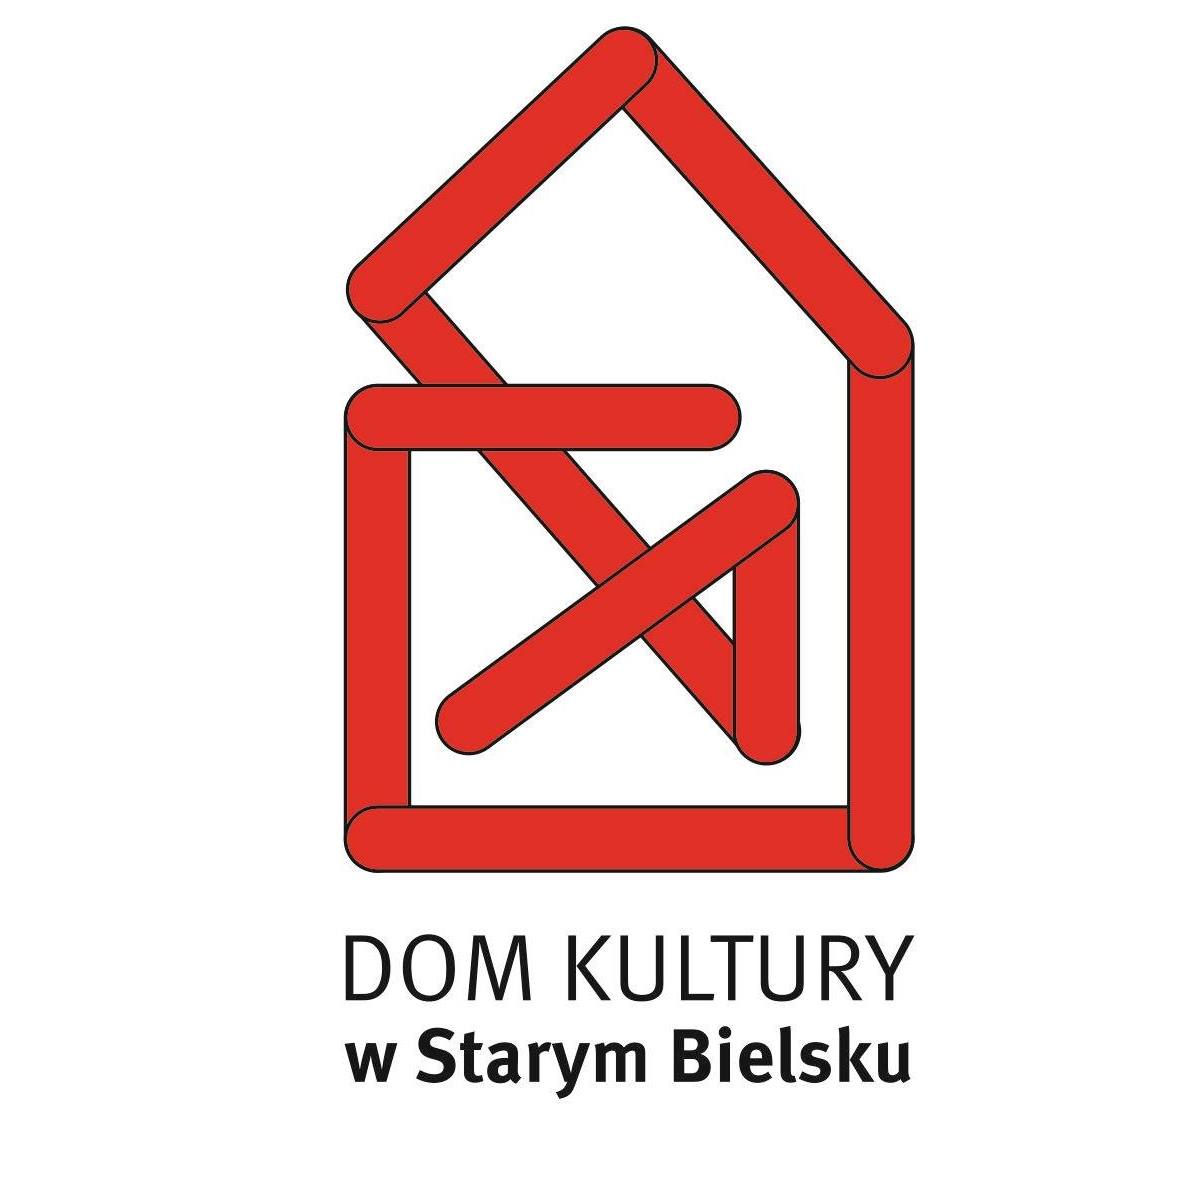  Starobielski Piknik Historyczny
 Na zdjęciu logo DK